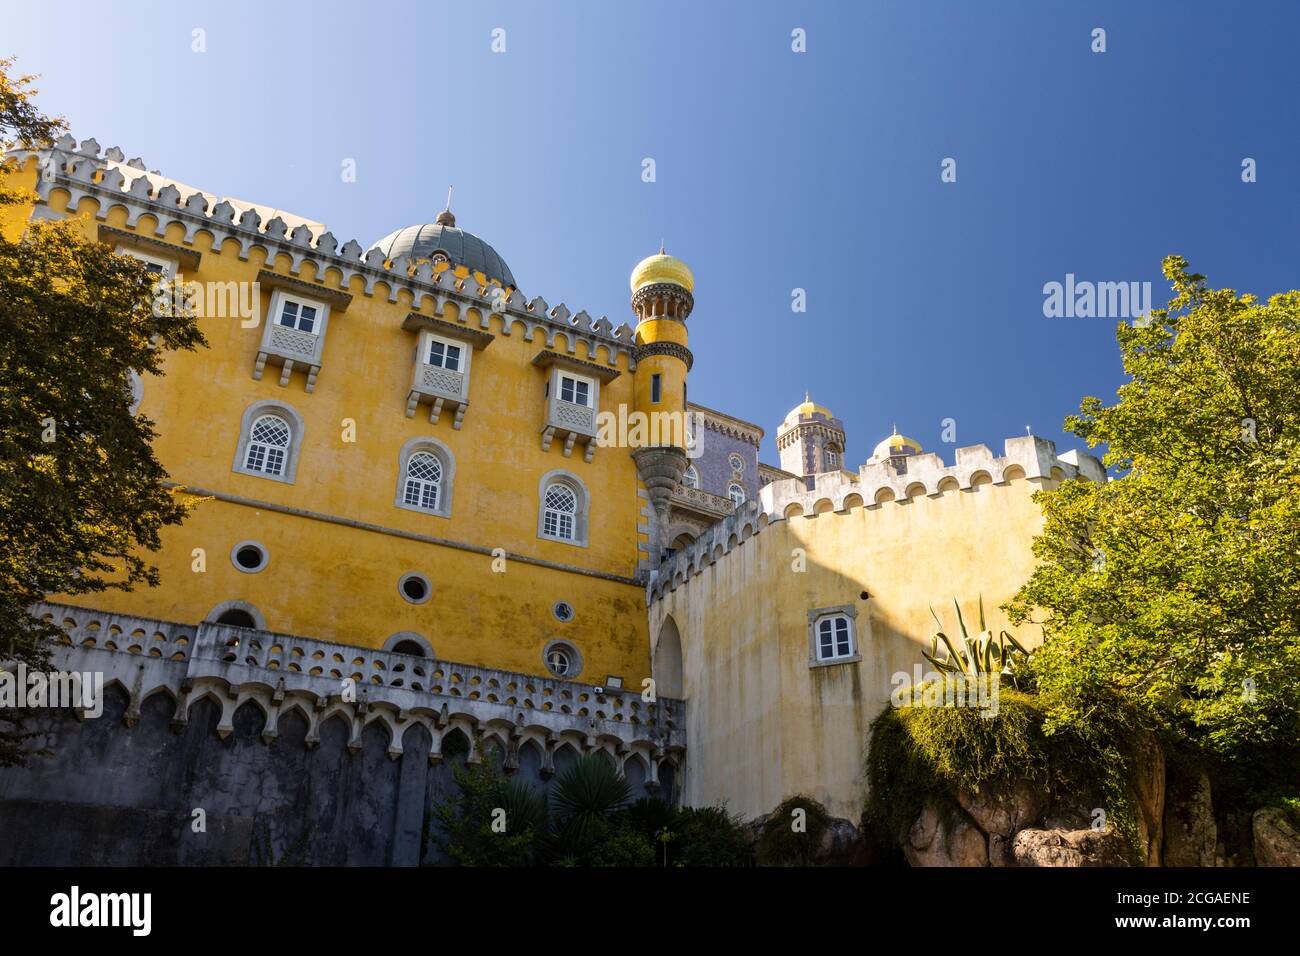 Belle vue sur le vieux château historique coloré de Sintra, près de Lisbonne, Portugal Banque D'Images